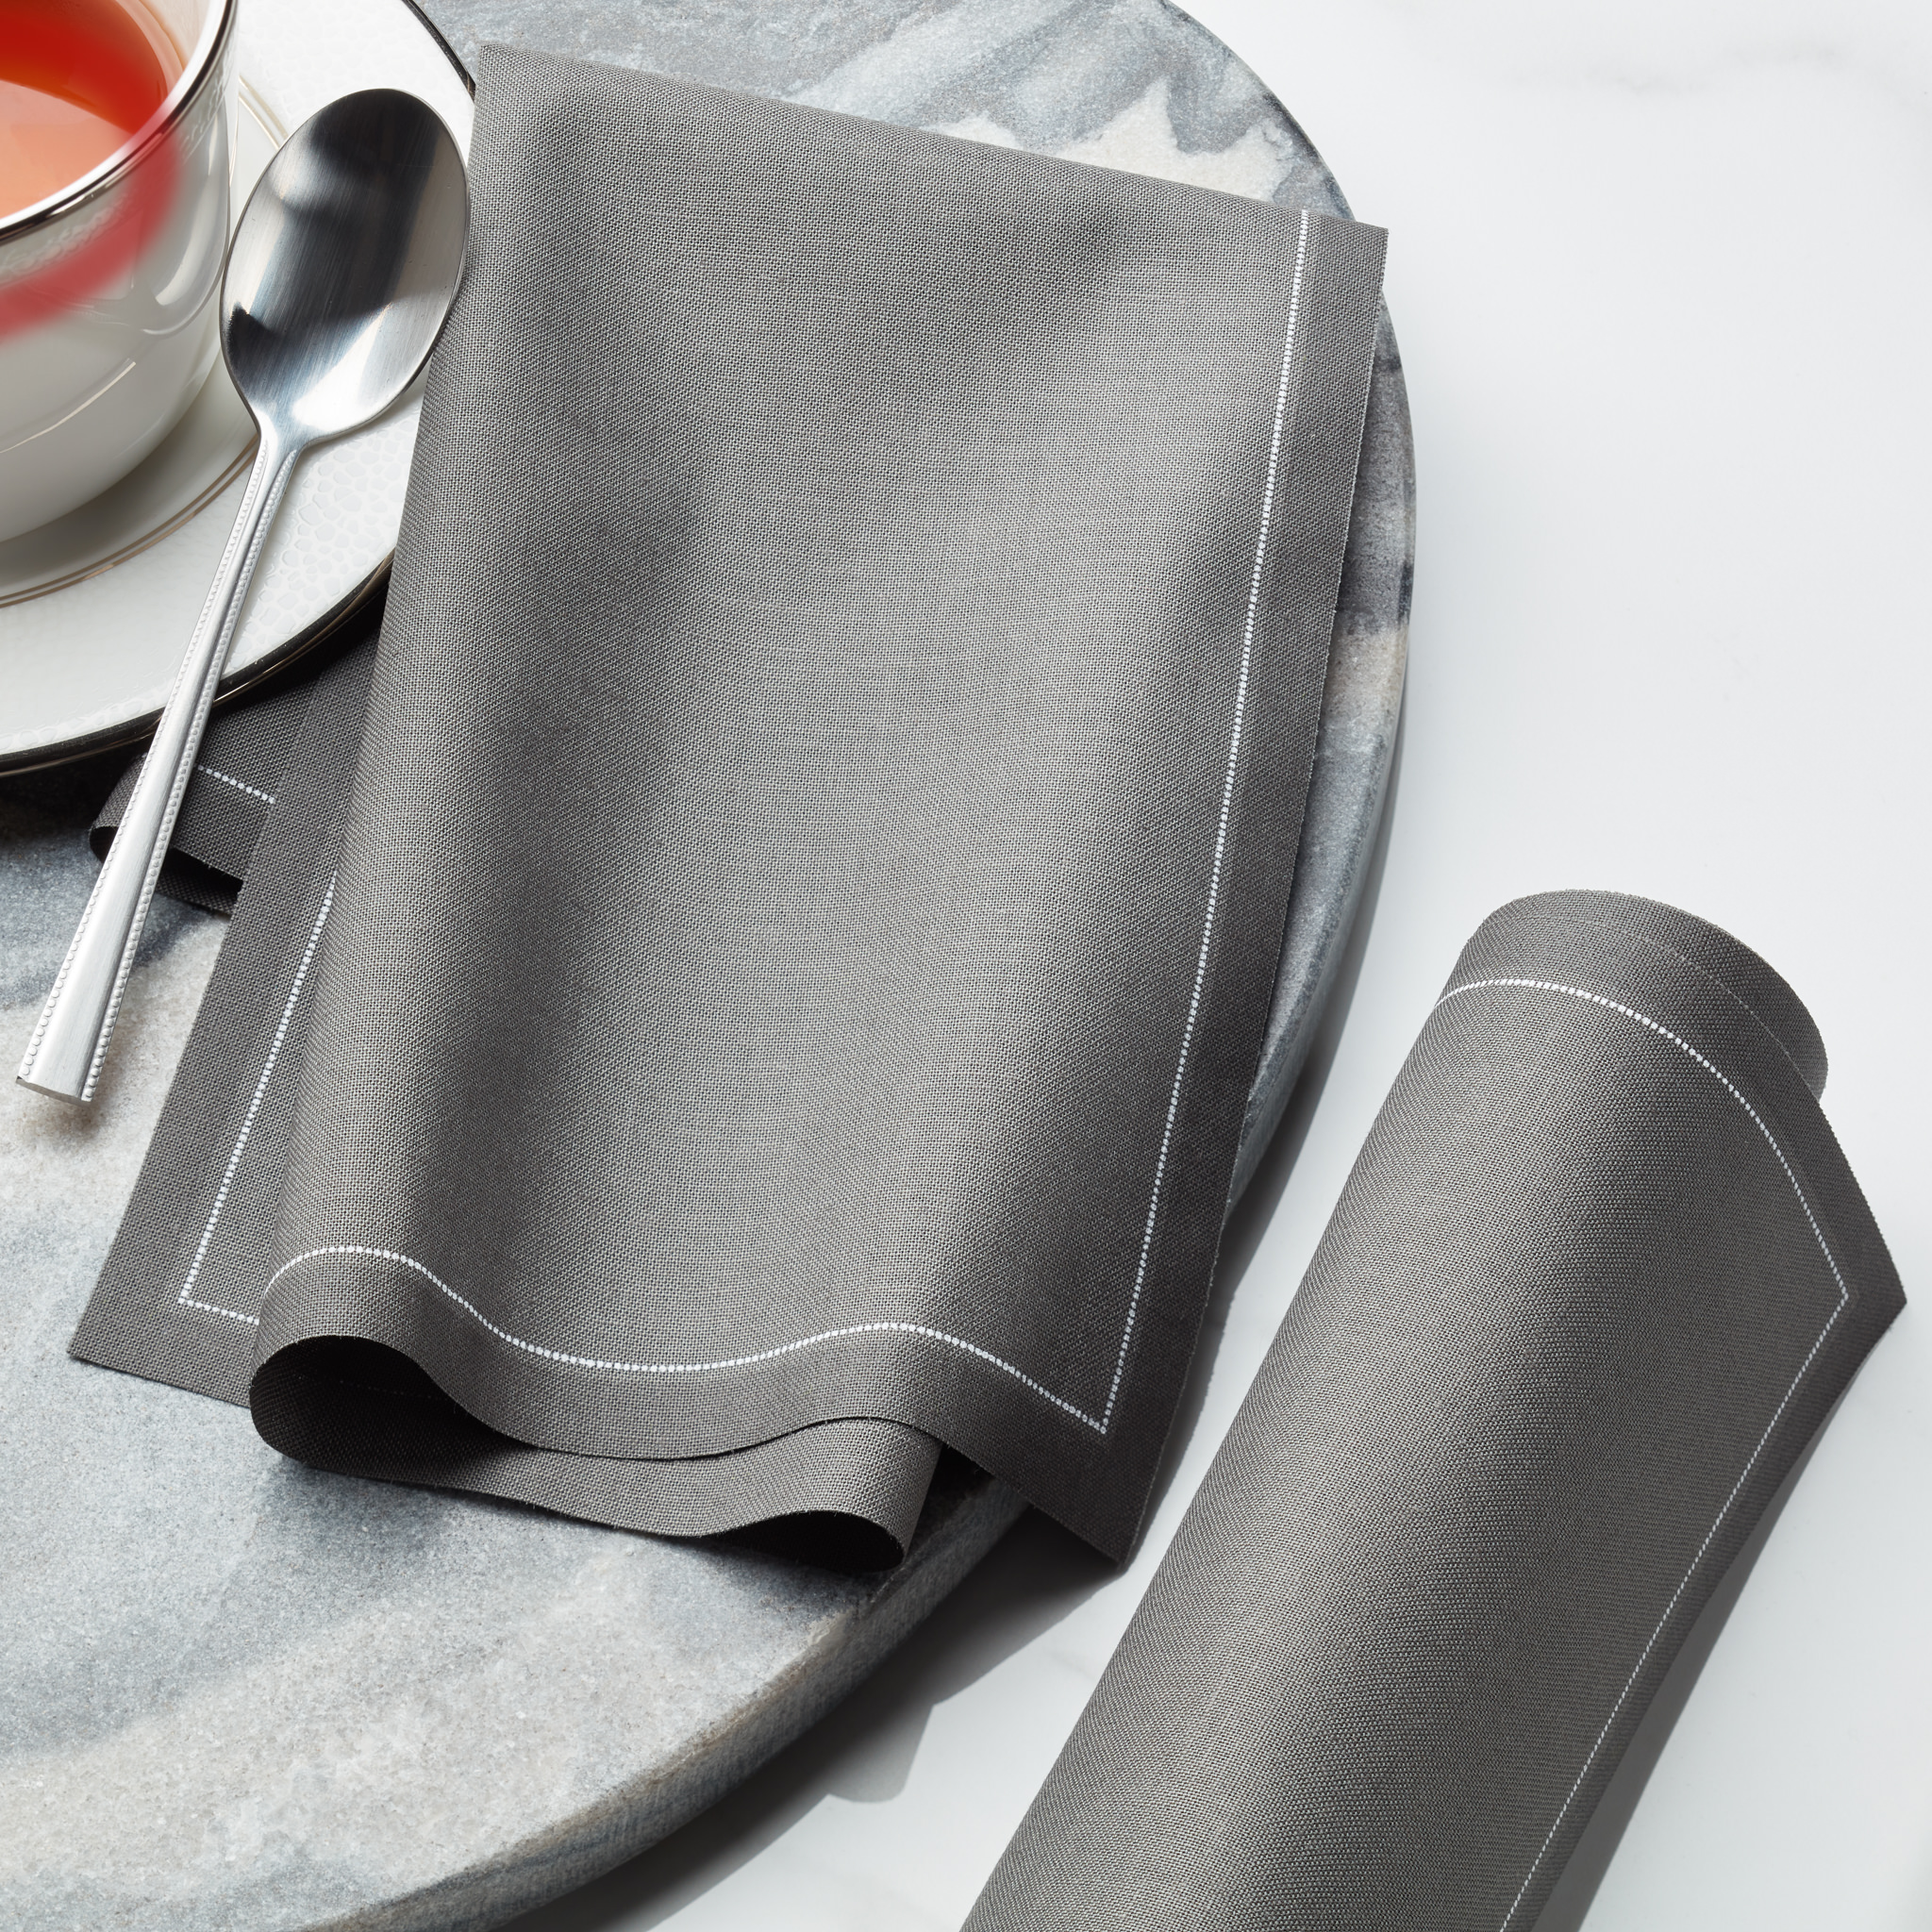 Anthracite Grey Coton Serviettes de table 12 Unites